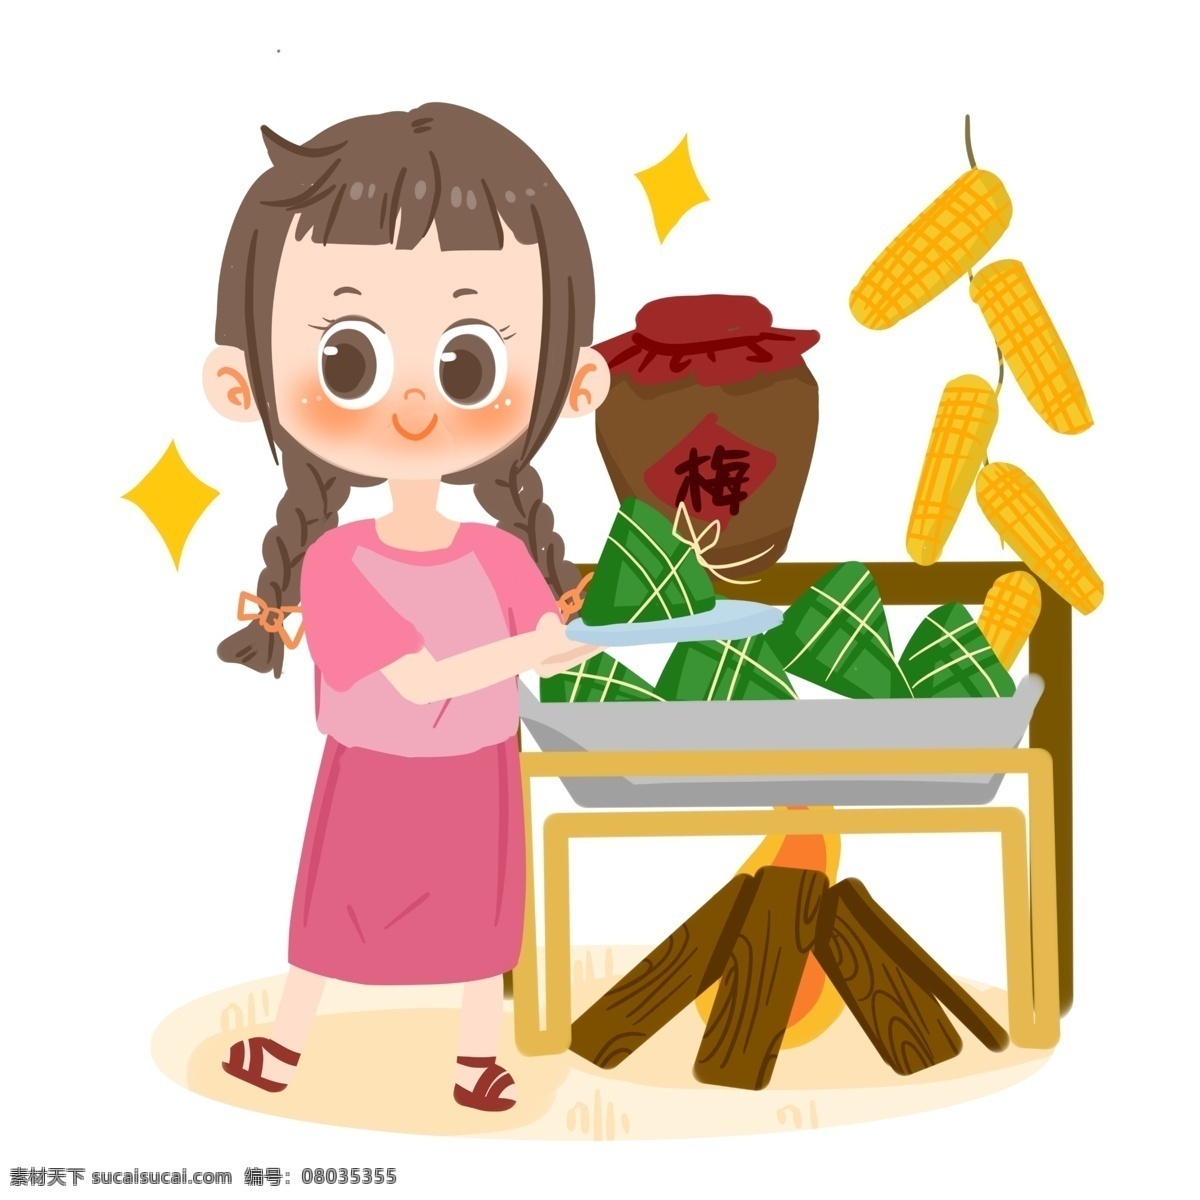 端午节 卡通 女孩 吃 粽子 星星 梅子酒 竹子 开心 端午习俗